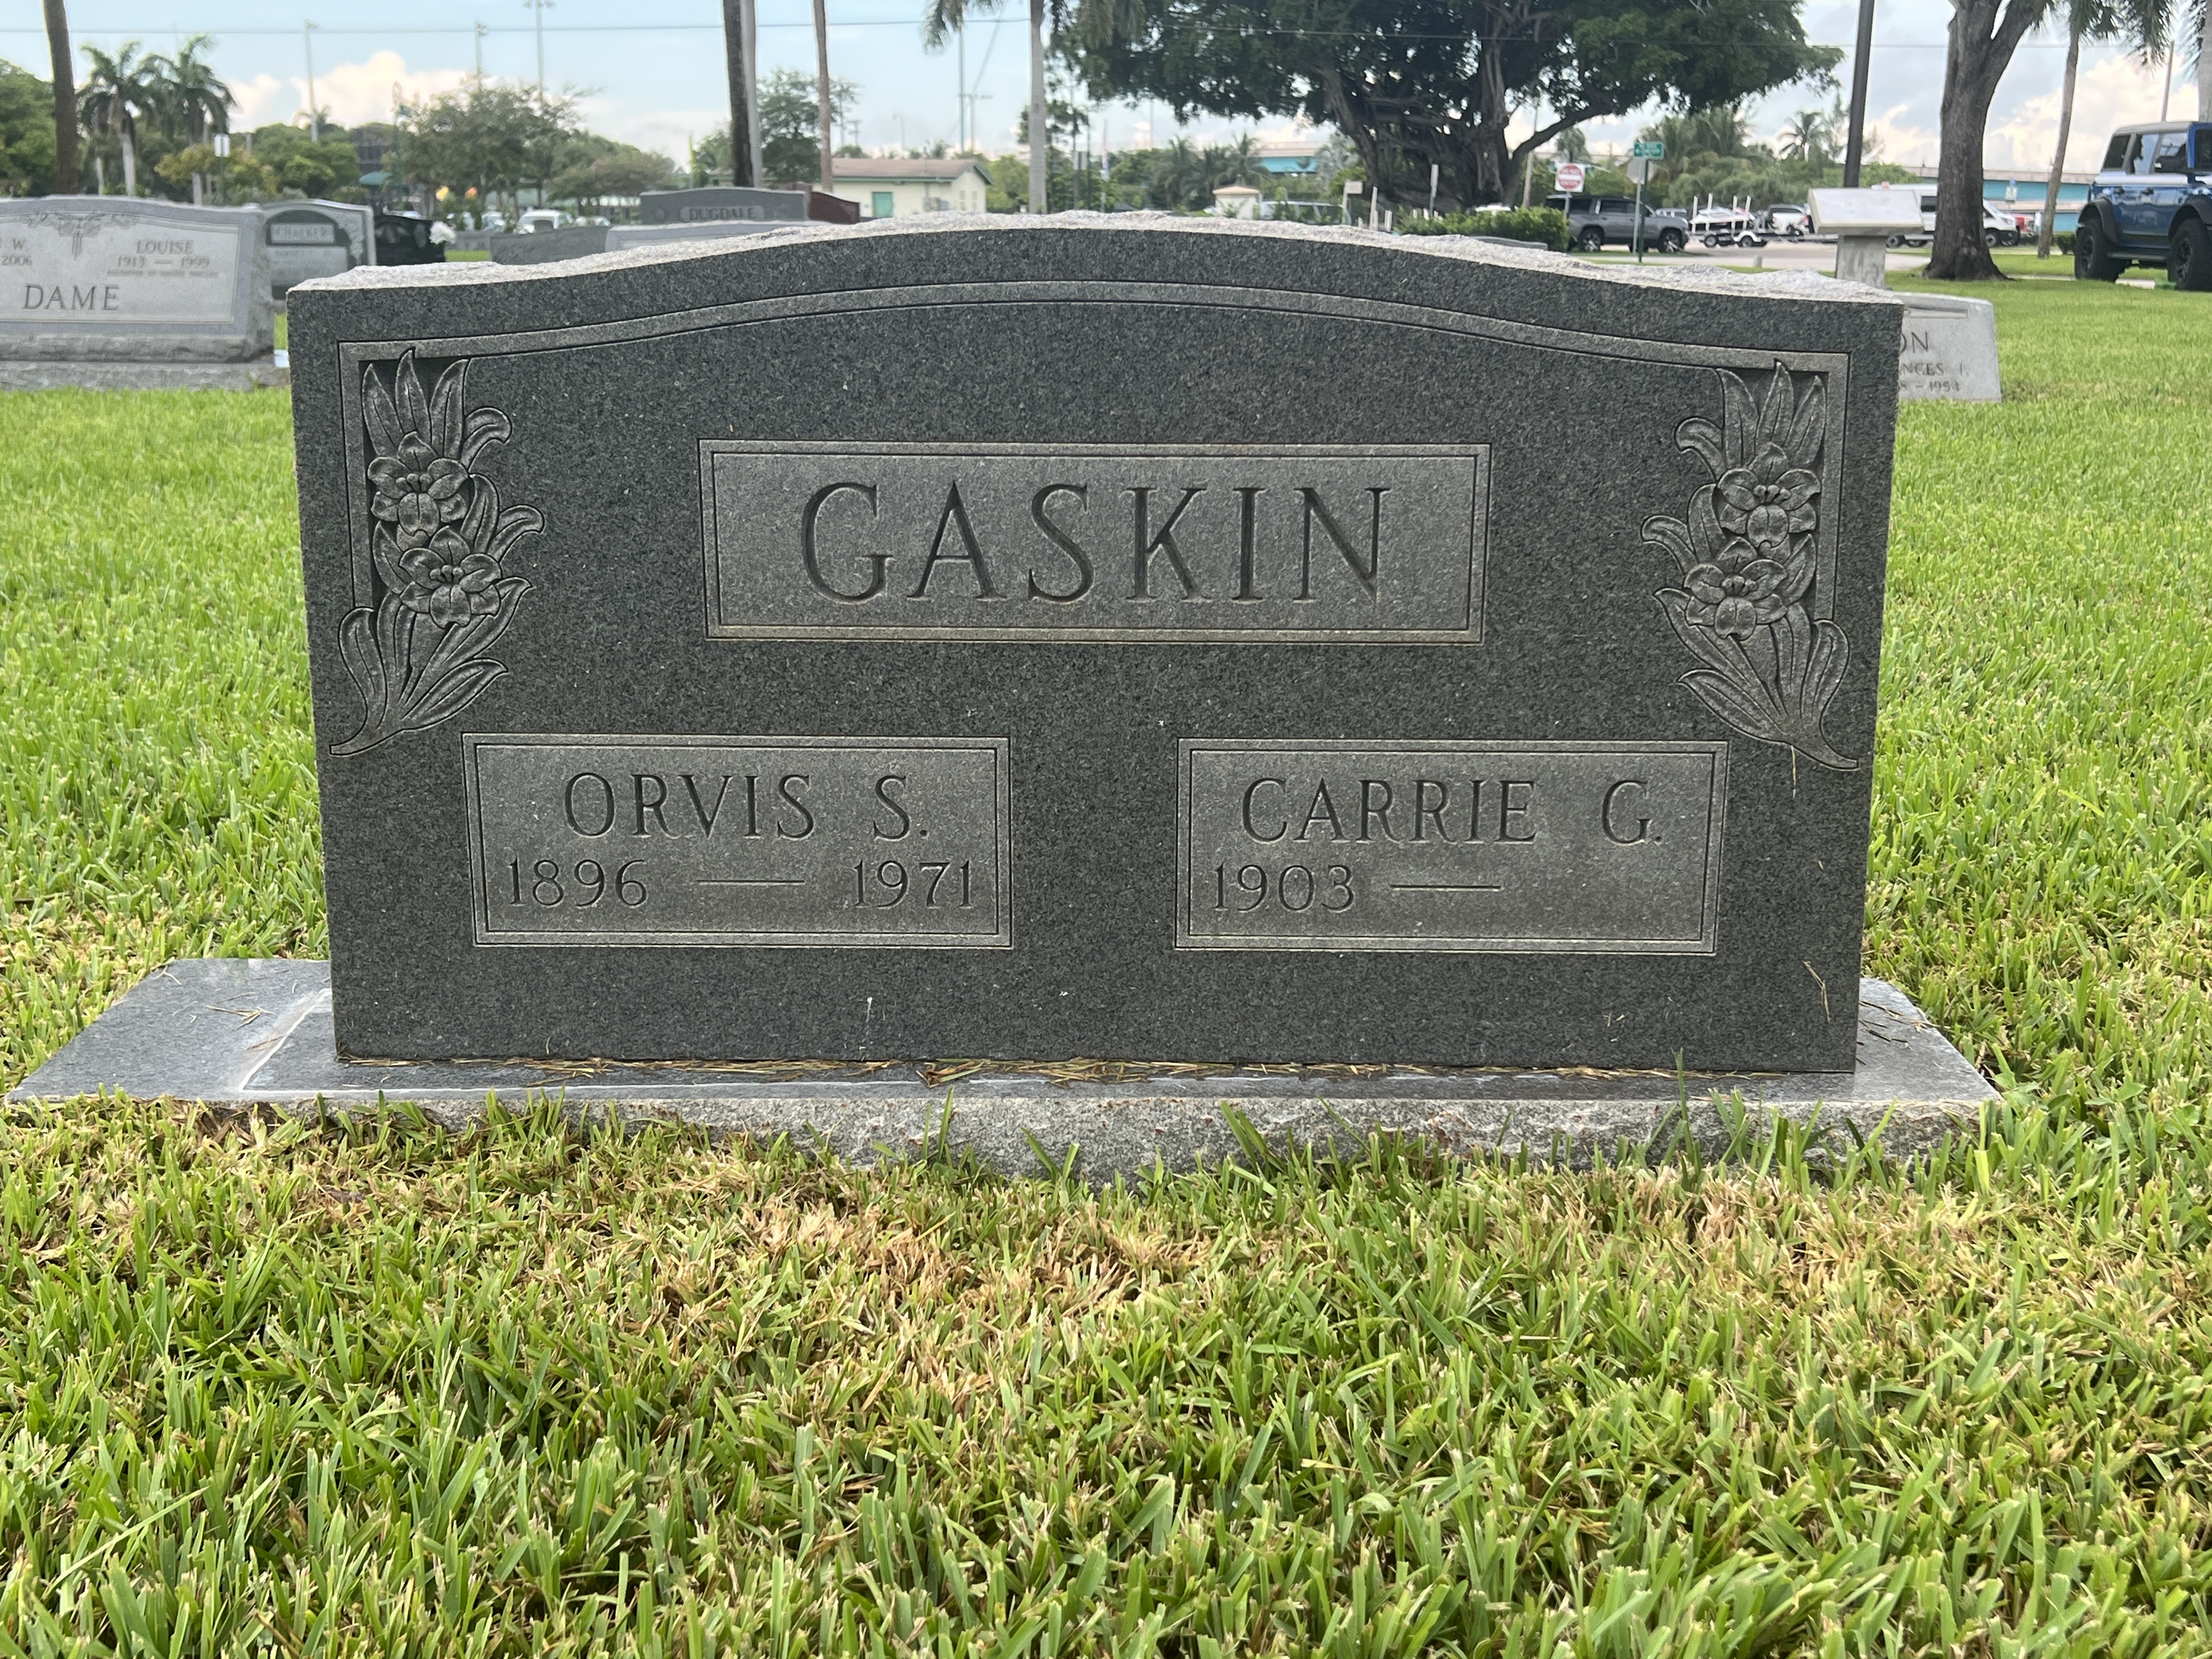 Orvis S Gaskin